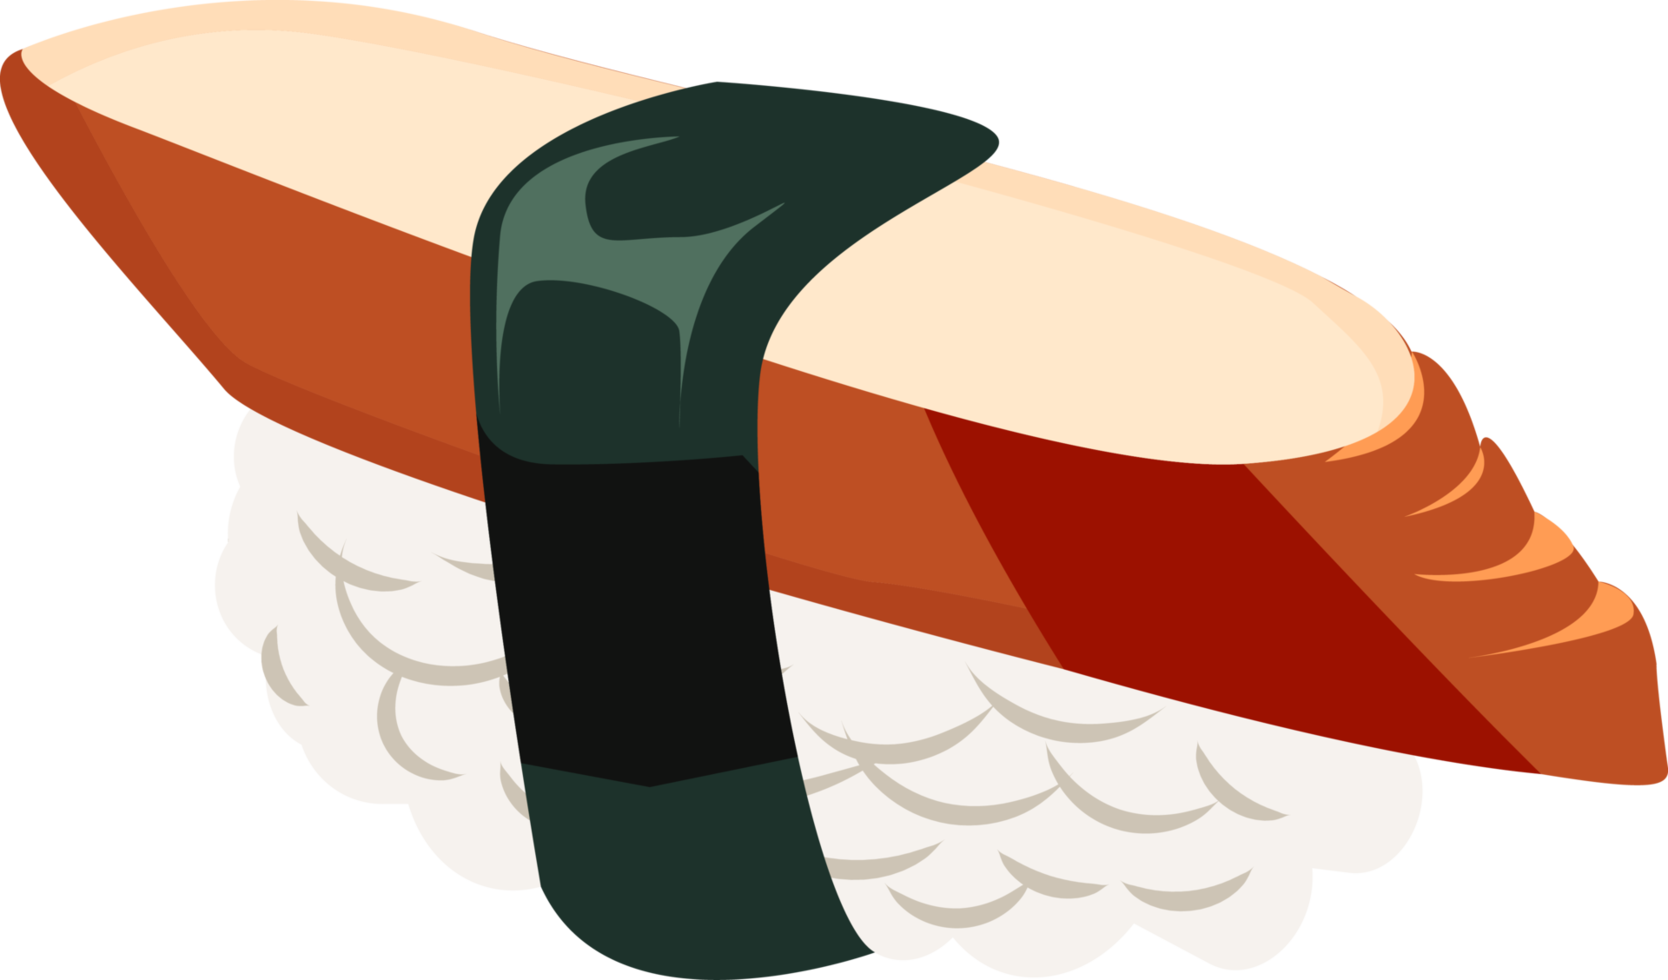 unagi Sushi, tipo de maki o arrollado Sushi, arroz coronado con cocido A la parrilla Anguila en parte superior y envuelto en nori algas marinas sábana png